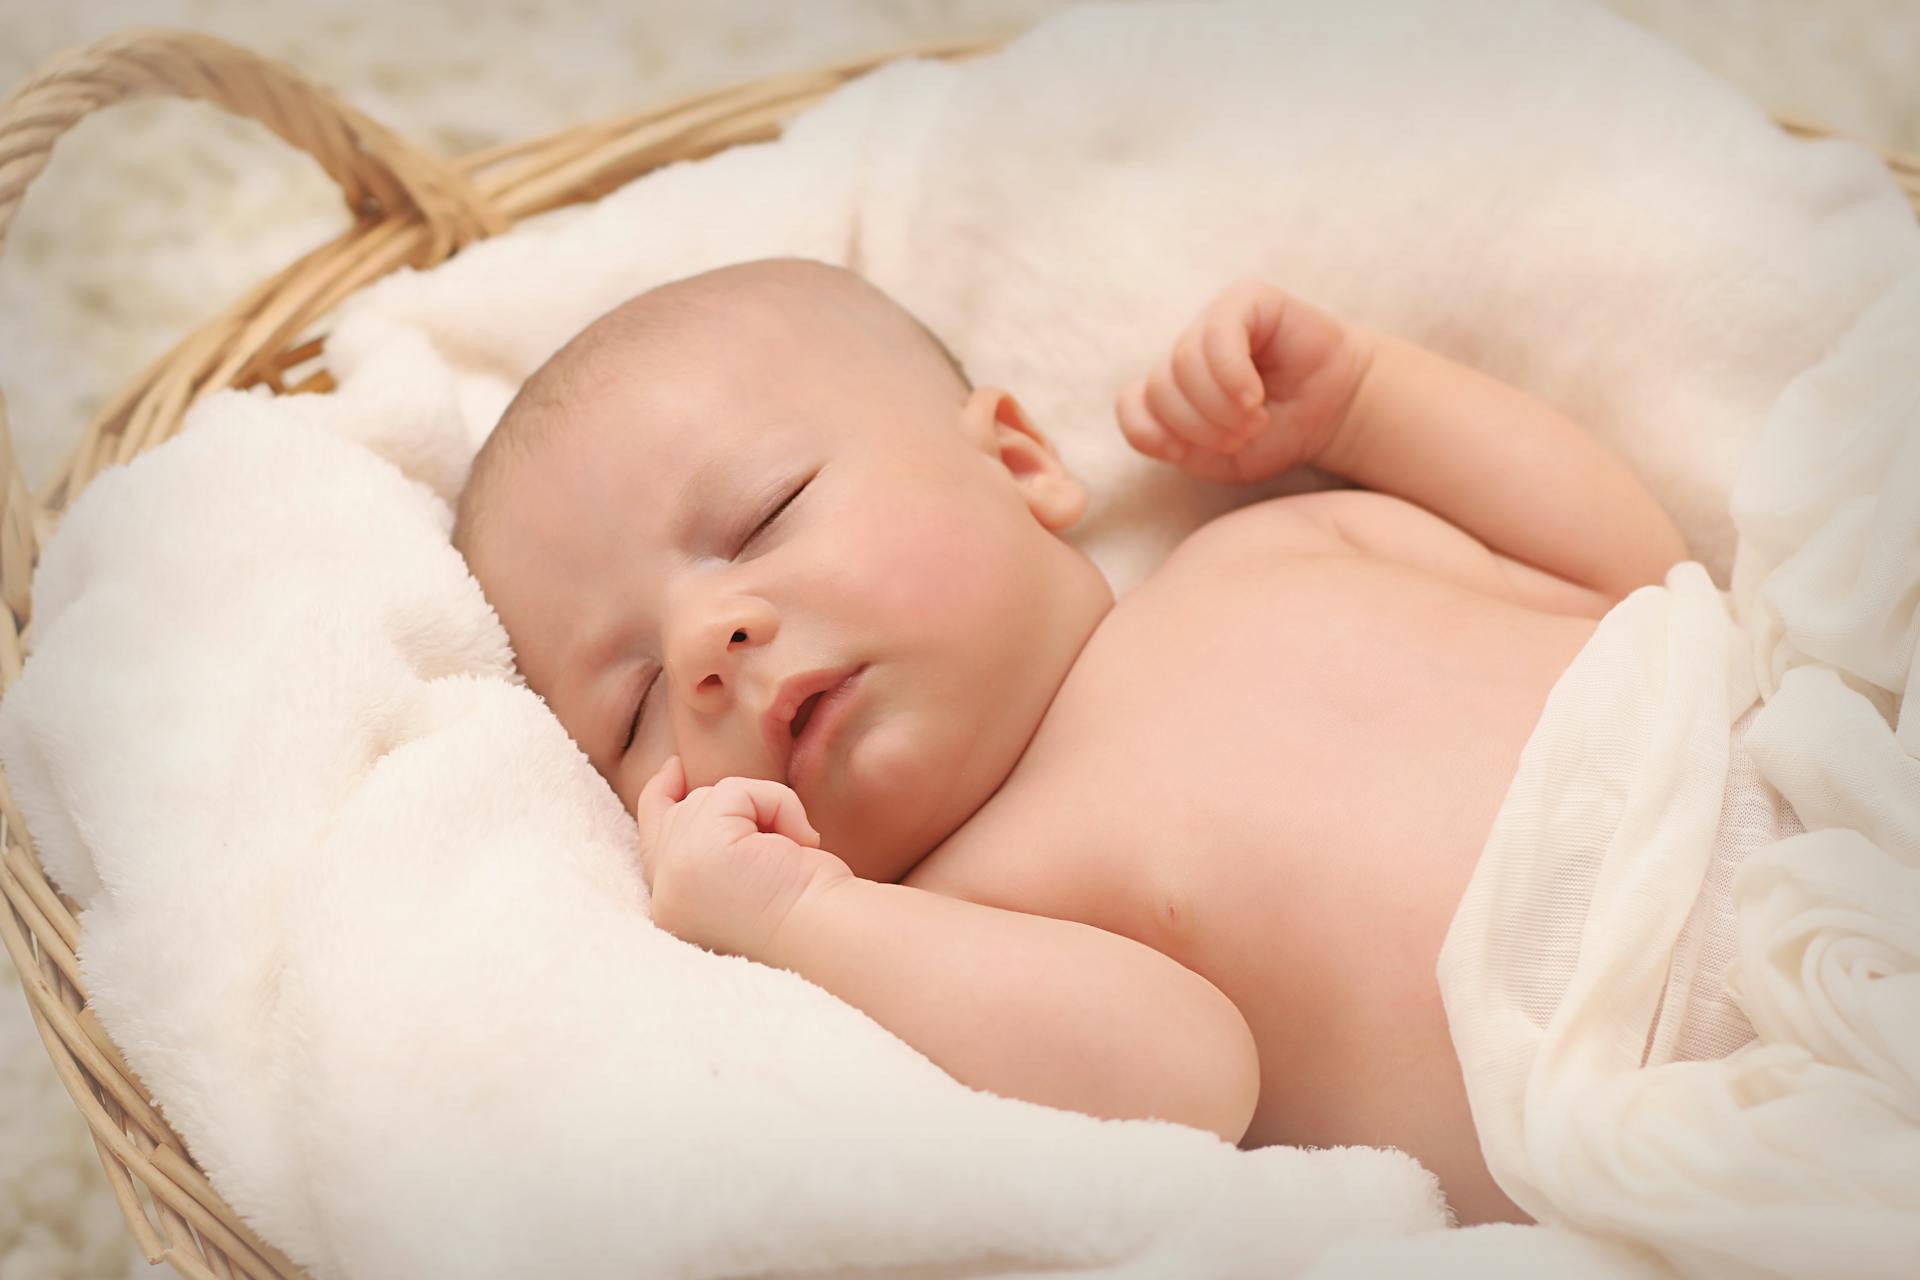 Bébé dormant dans un panier | Source : Pexels